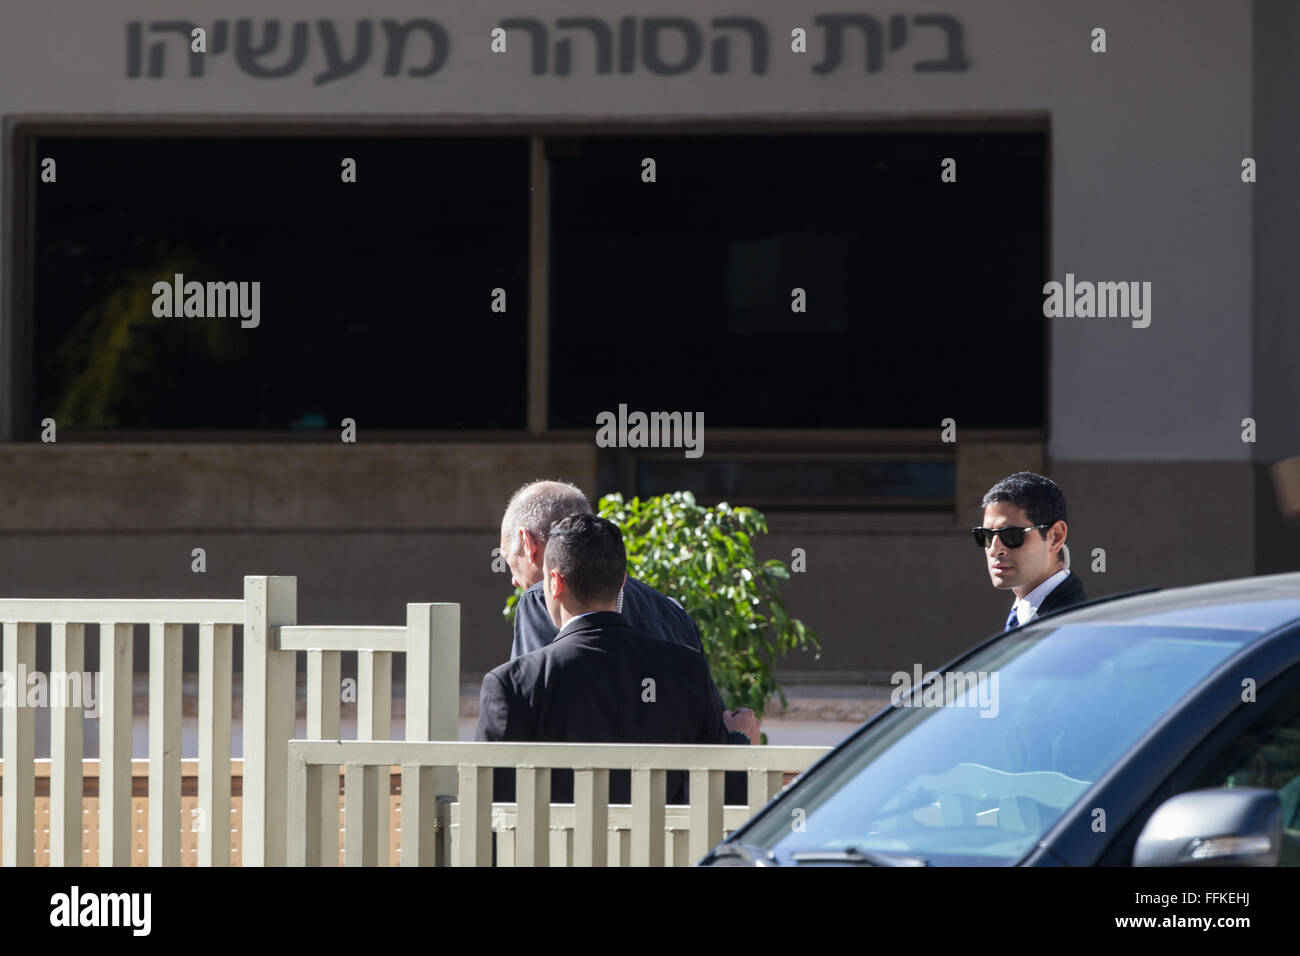 Jérusalem, Israël. Feb 15, 2016. L'ancien Premier ministre israélien Ehud Olmert (L) entre dans la prison Maasiyahu près de Ramle, au sud de Tel Aviv, Israël, le 15 février 2016. L'ancien premier ministre israélien Ehoud Olmert a commencé lundi à servir ses 19 mois d'emprisonnement pour corruption et entrave à la justice. JINI ©/Xinhua/Alamy Live News Banque D'Images